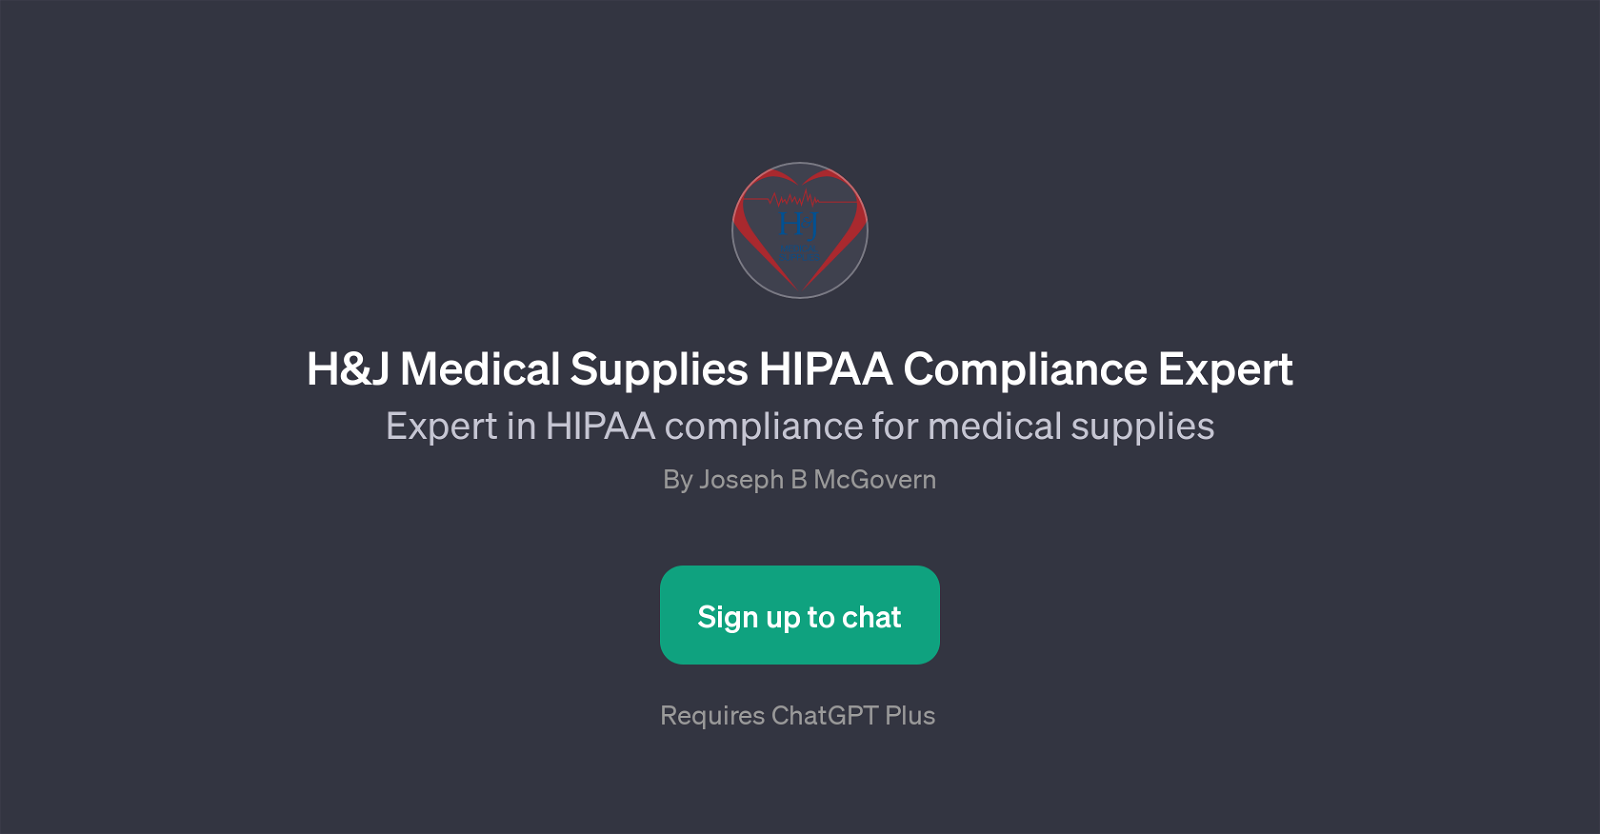 H&J Medical Supplies HIPAA Compliance Expert website